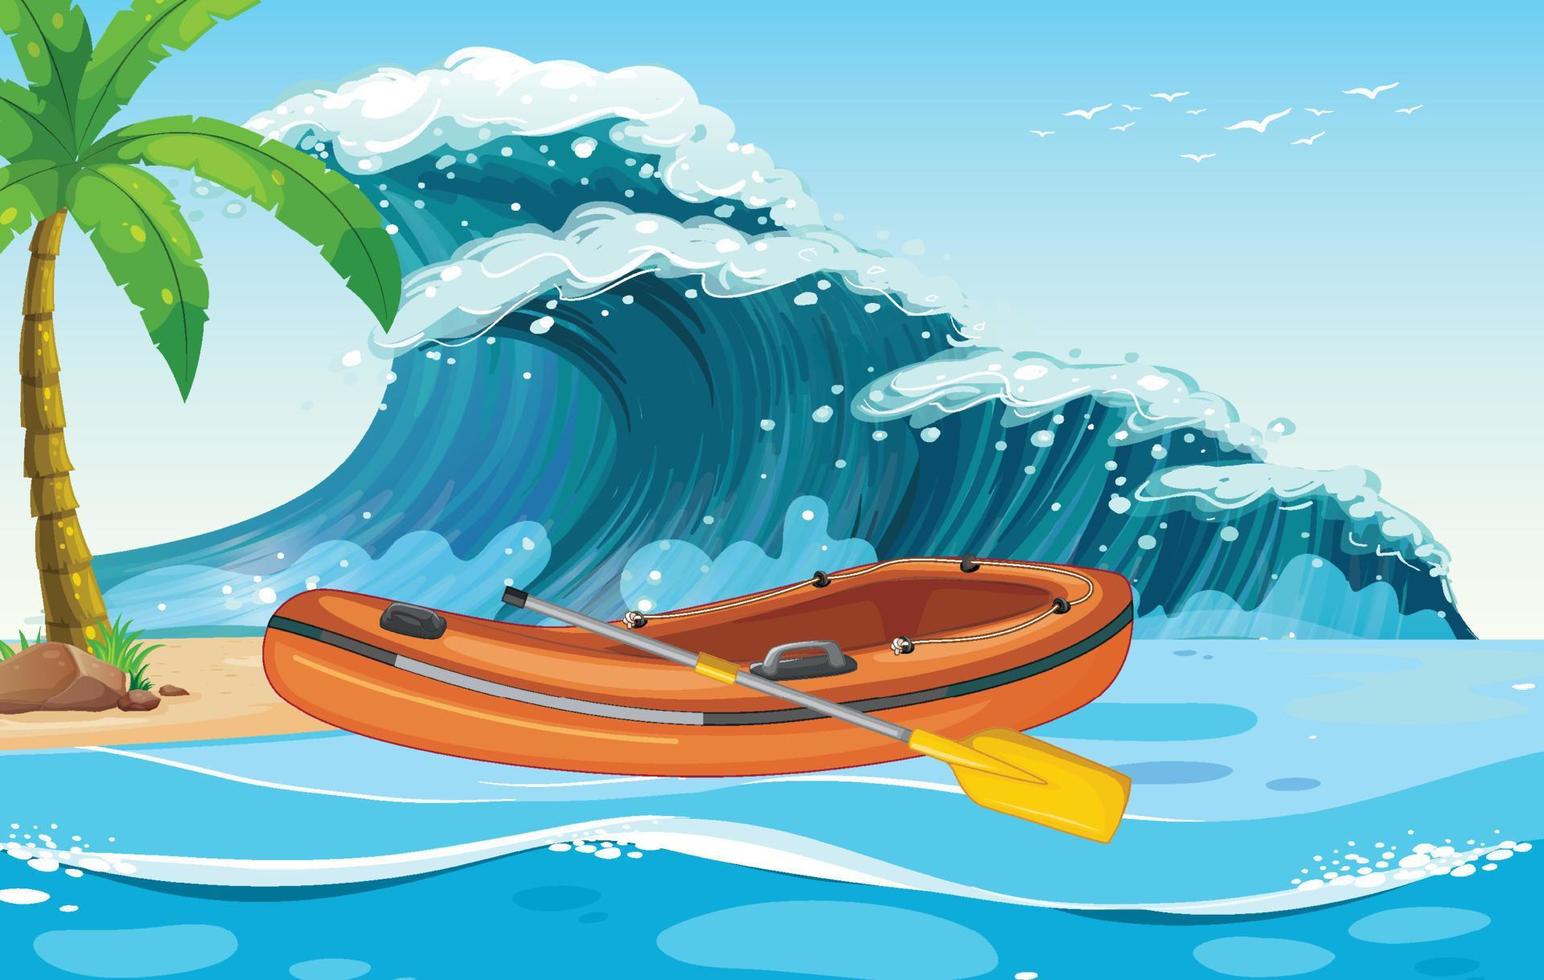 Escena de playa con bote inflable en las olas del mar. vector